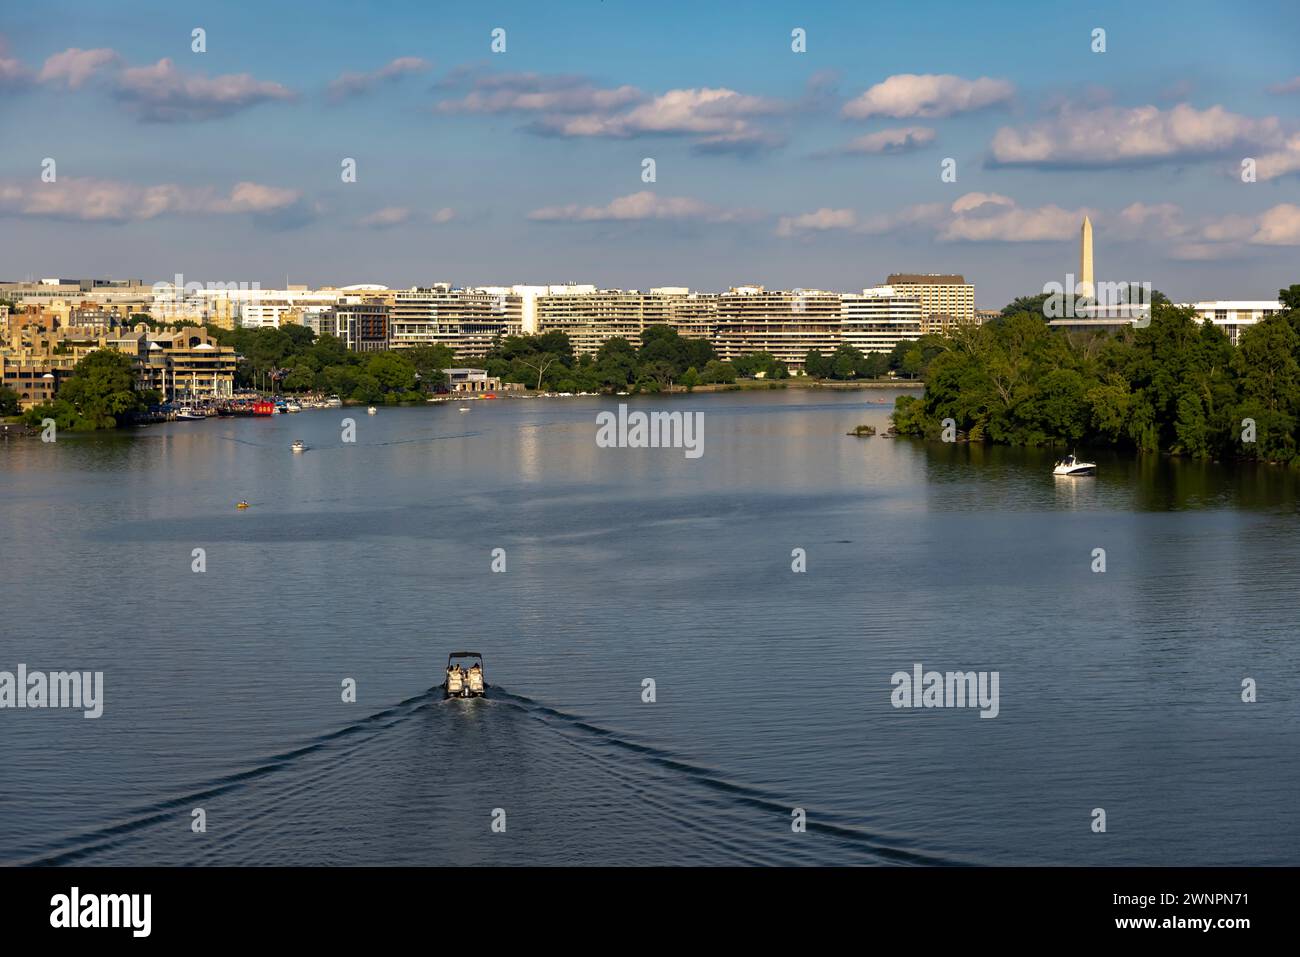 Il fiume Potomac separa Georgetown, Washington D.C., da Arlington, Virginia, ed è molto frequentato dai diportisti, dai kayak e dagli appassionati di attività all'aperto. Foto Stock